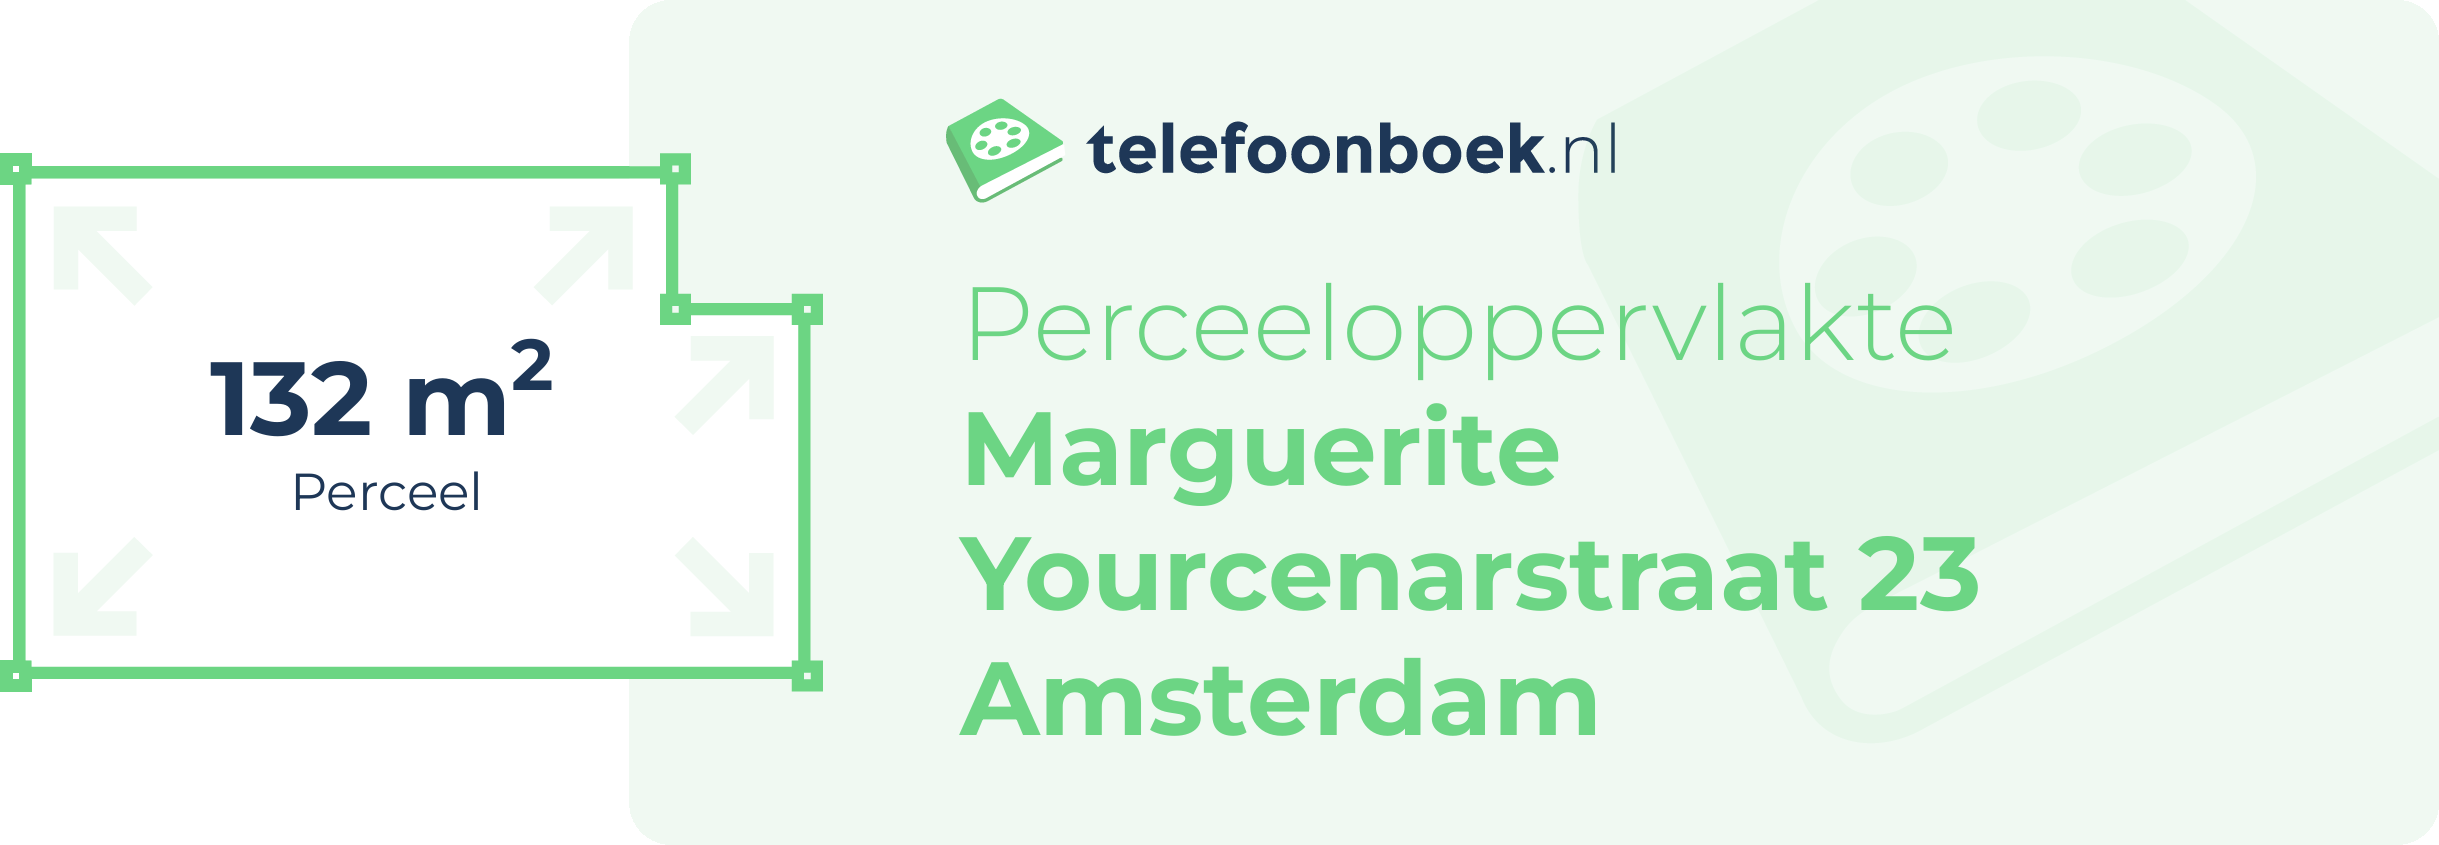 Perceeloppervlakte Marguerite Yourcenarstraat 23 Amsterdam